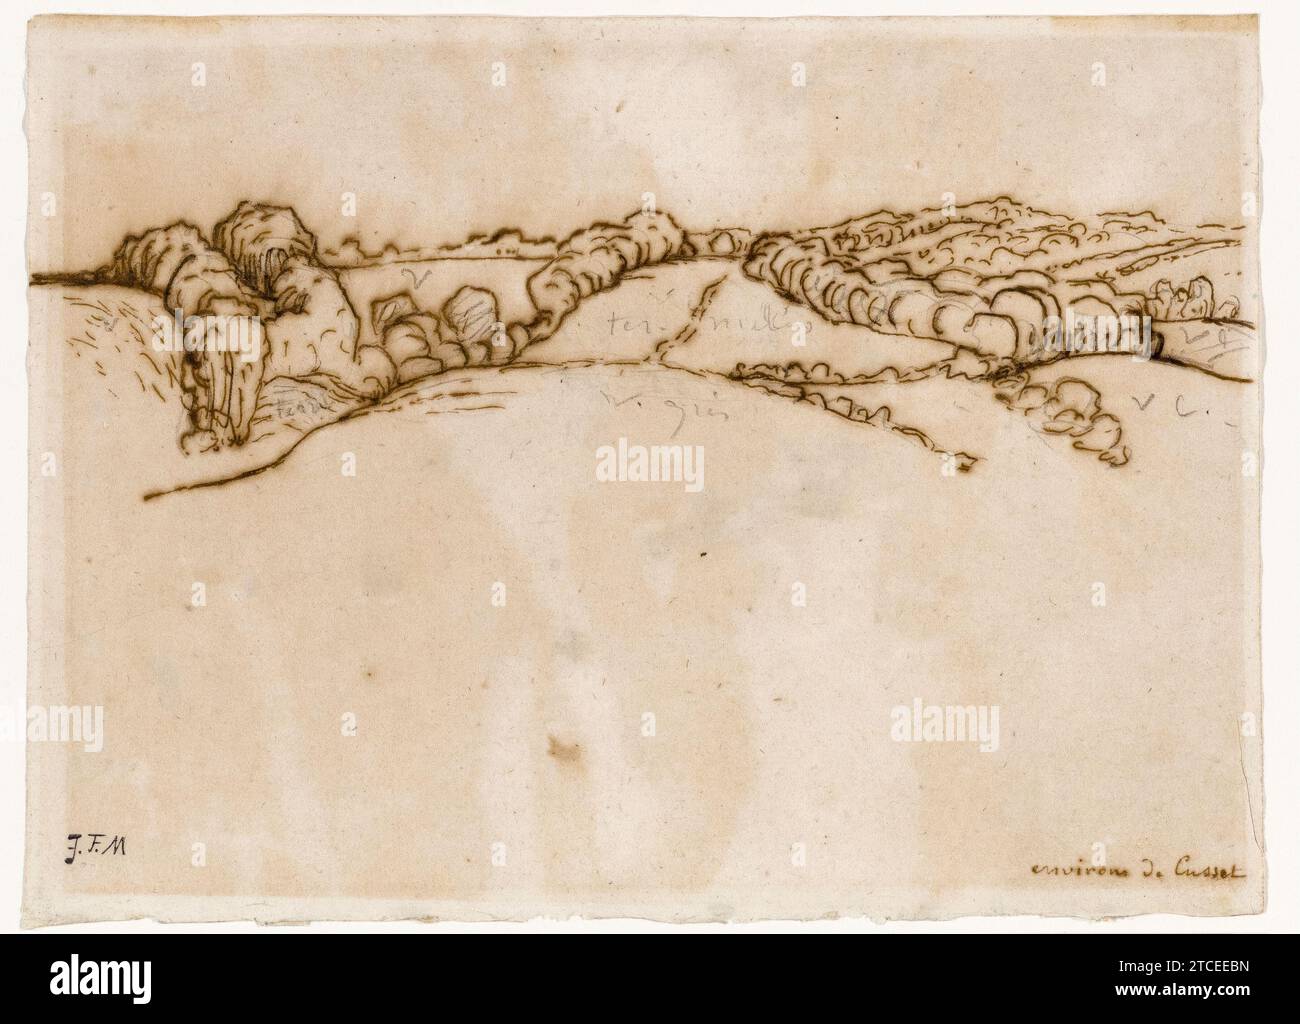 Jean Francois Millet, Environs de Cusset, Landschaftszeichnung in Stift und Tinte über Bleistift, 1864-1871 Stockfoto